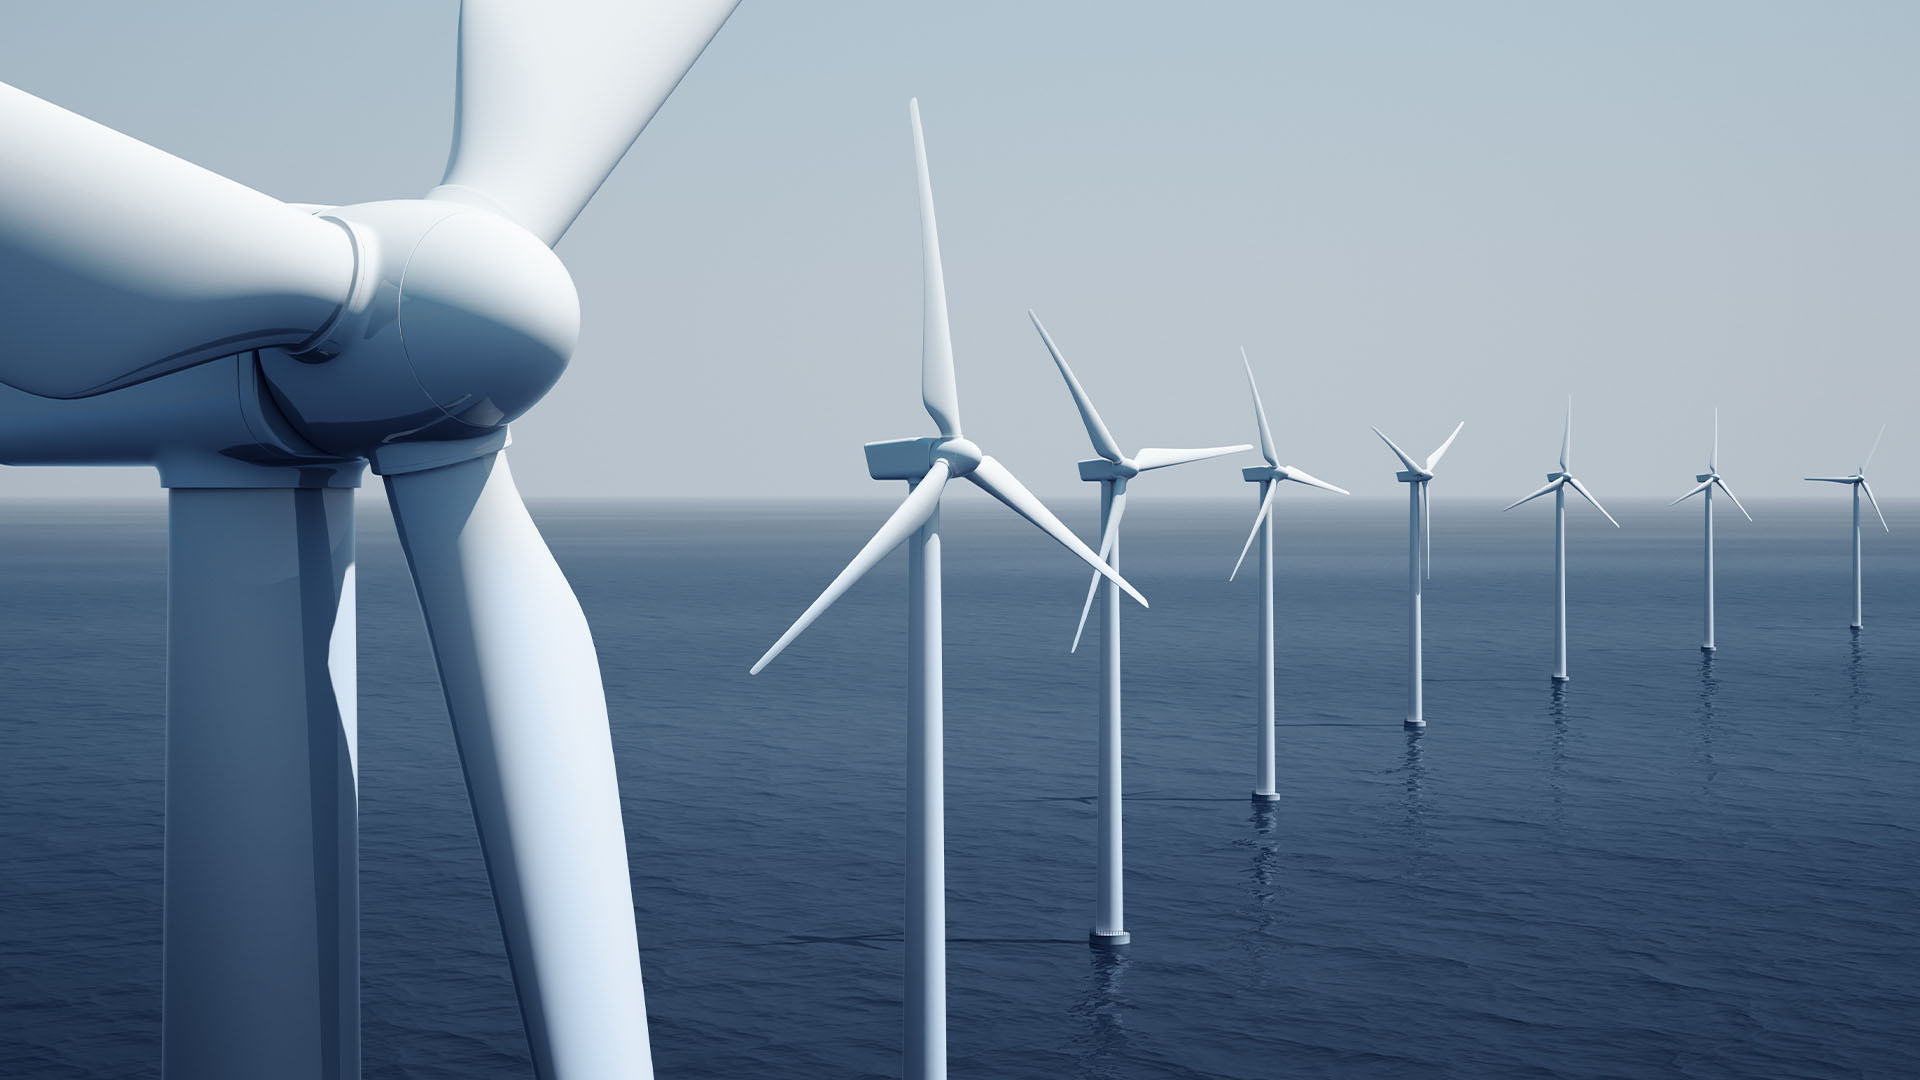 Australia’s offshore wind regulatory framework progresses